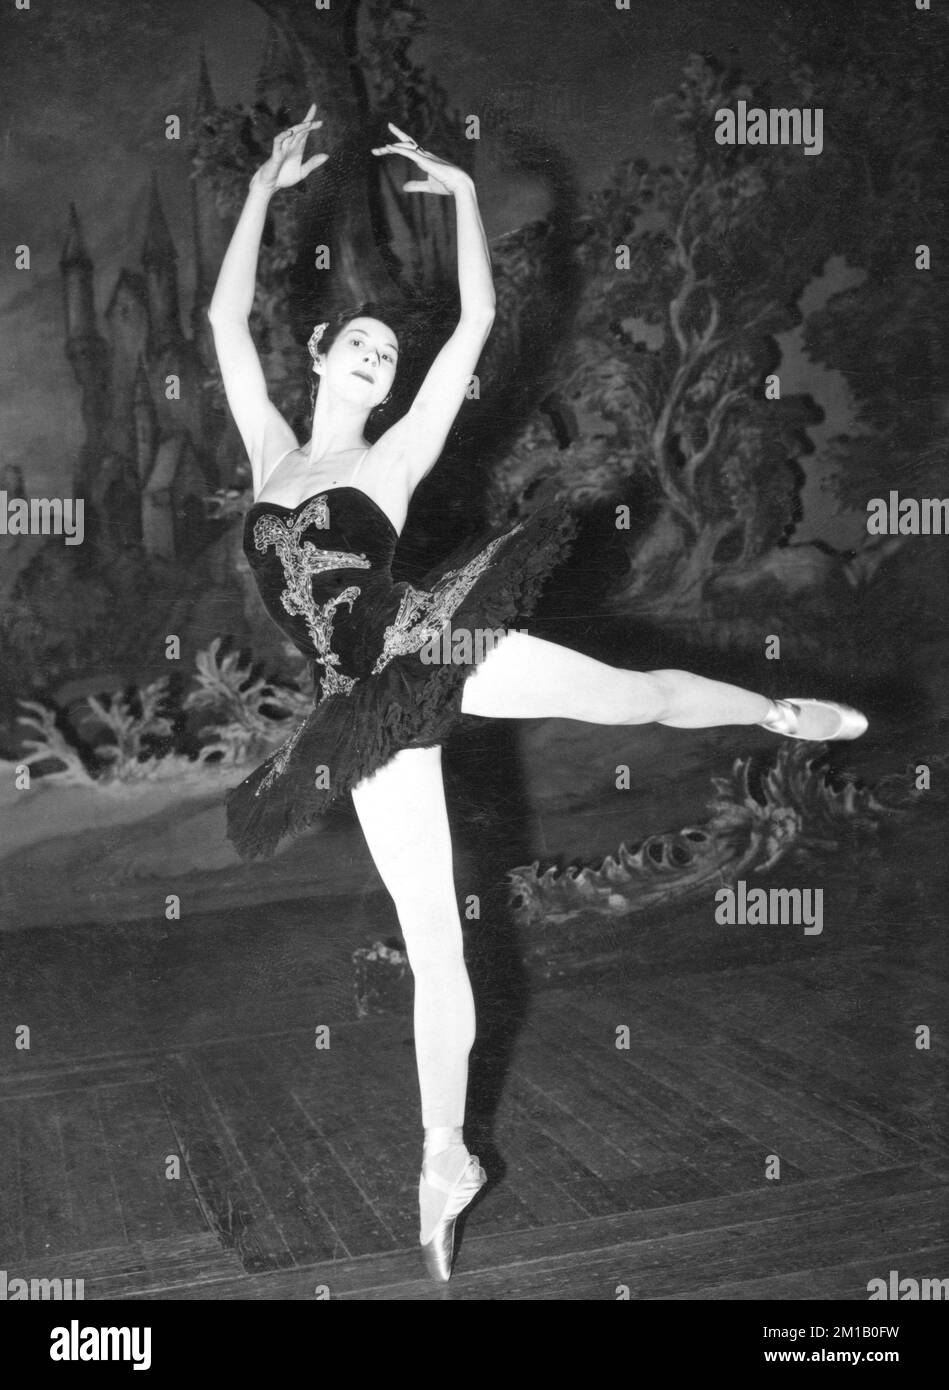 Aktenfoto vom 15. Oktober 3/1955 von Ballerina Beryl Grey tanzt die Rolle des Idyll im Schwanensee im Covent Garden. Präsidentin und ehemalige künstlerische Direktorin des englischen National Ballet Dame Beryl Grey ist im Alter von 95 Jahren gestorben. Das Unternehmen bestätigte den Tod von Dame Beryl, die ihr Leben der Kunstform widmete, von ihrem Bühnendebüt mit 15 bis hin zu einer dame im Jahr 2005. Ausgabedatum: Sonntag, 11. Dezember 2022. Stockfoto